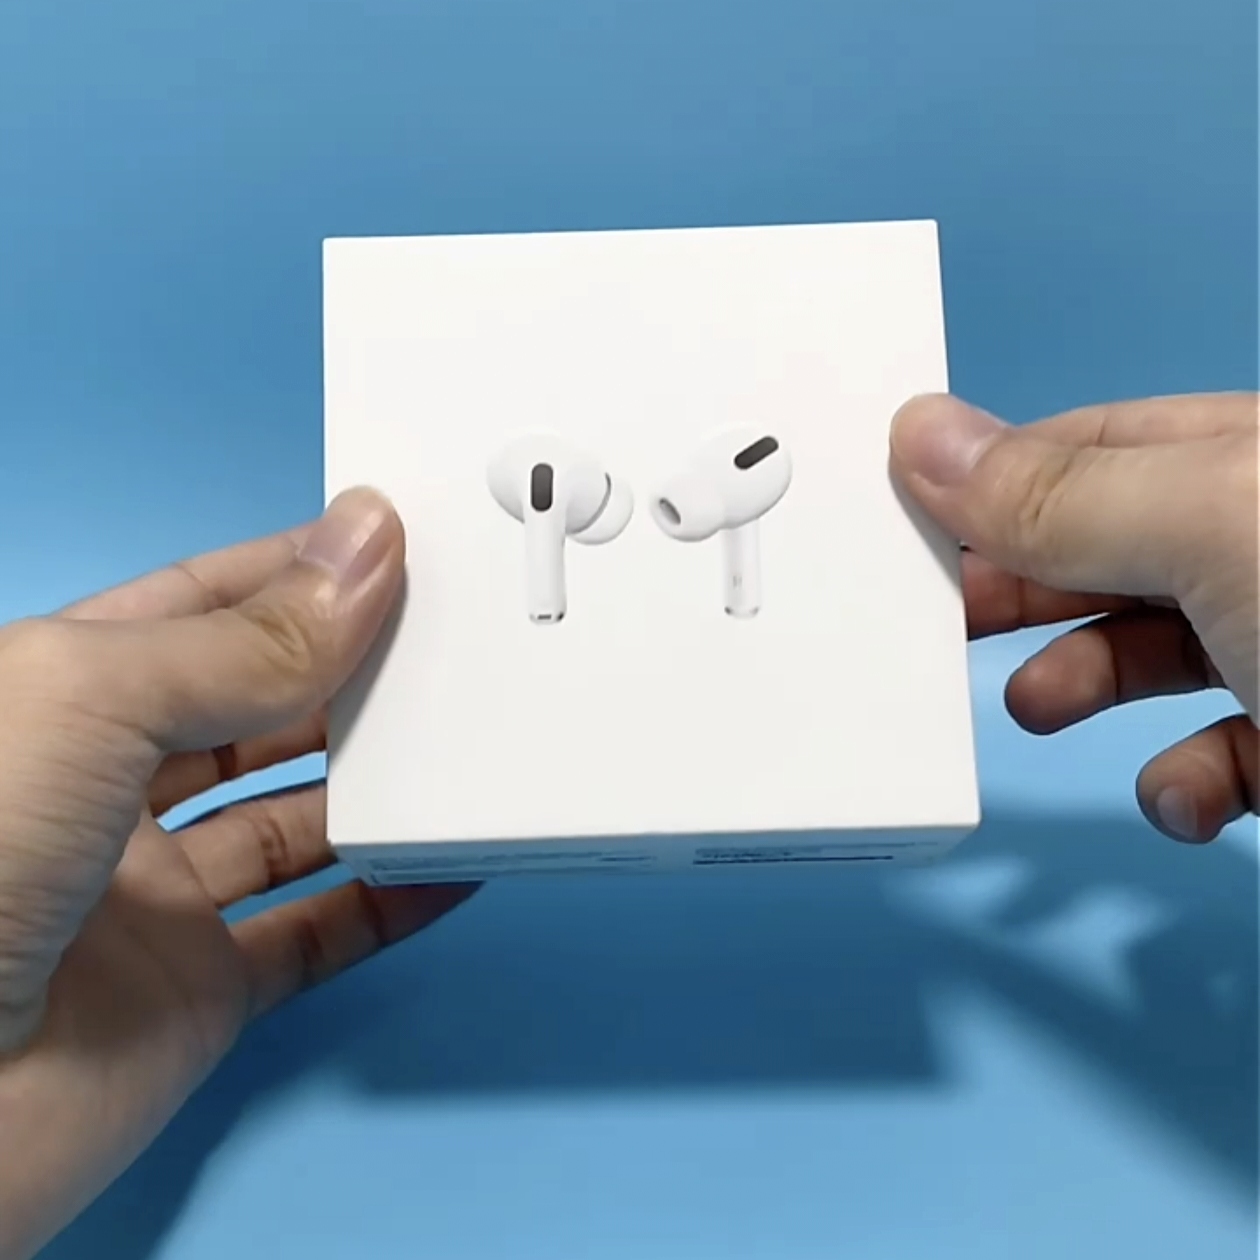 apple airpods pro 第二代无线蓝牙耳机